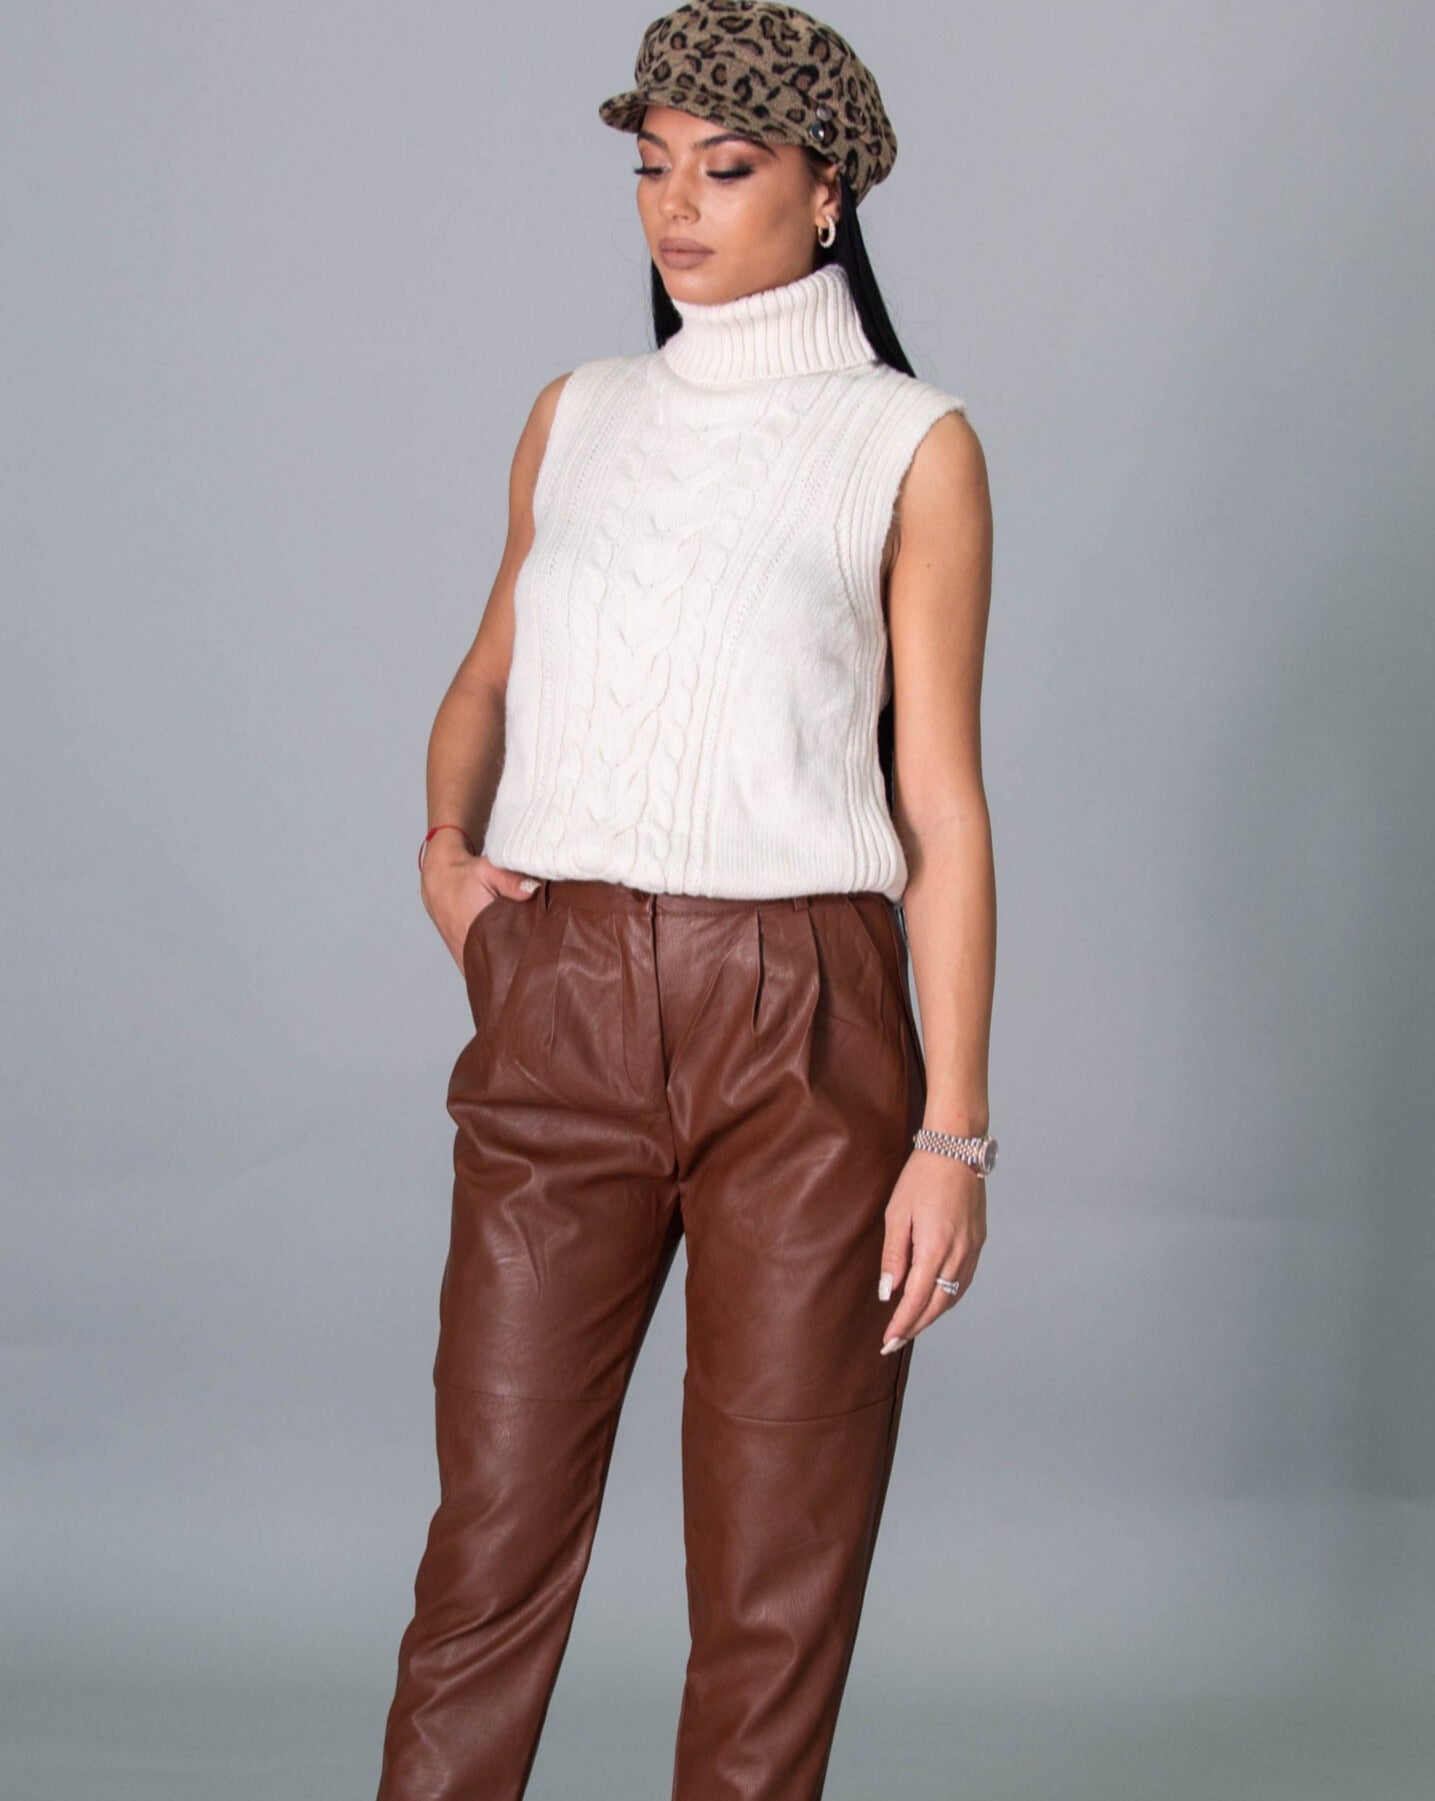 Дамски панталон CATTLEYA  https://bvseductive.com/products/дамски-панталон-cattleya-1  еко кожа&nbsp; тренди дамски панталон в кафяв цвят със свободна и удобна кройка&nbsp; модел висока талия и набор над джоба атрактивен дизайн за модерна визия&nbsp; чудесен избор за стилно излъчване